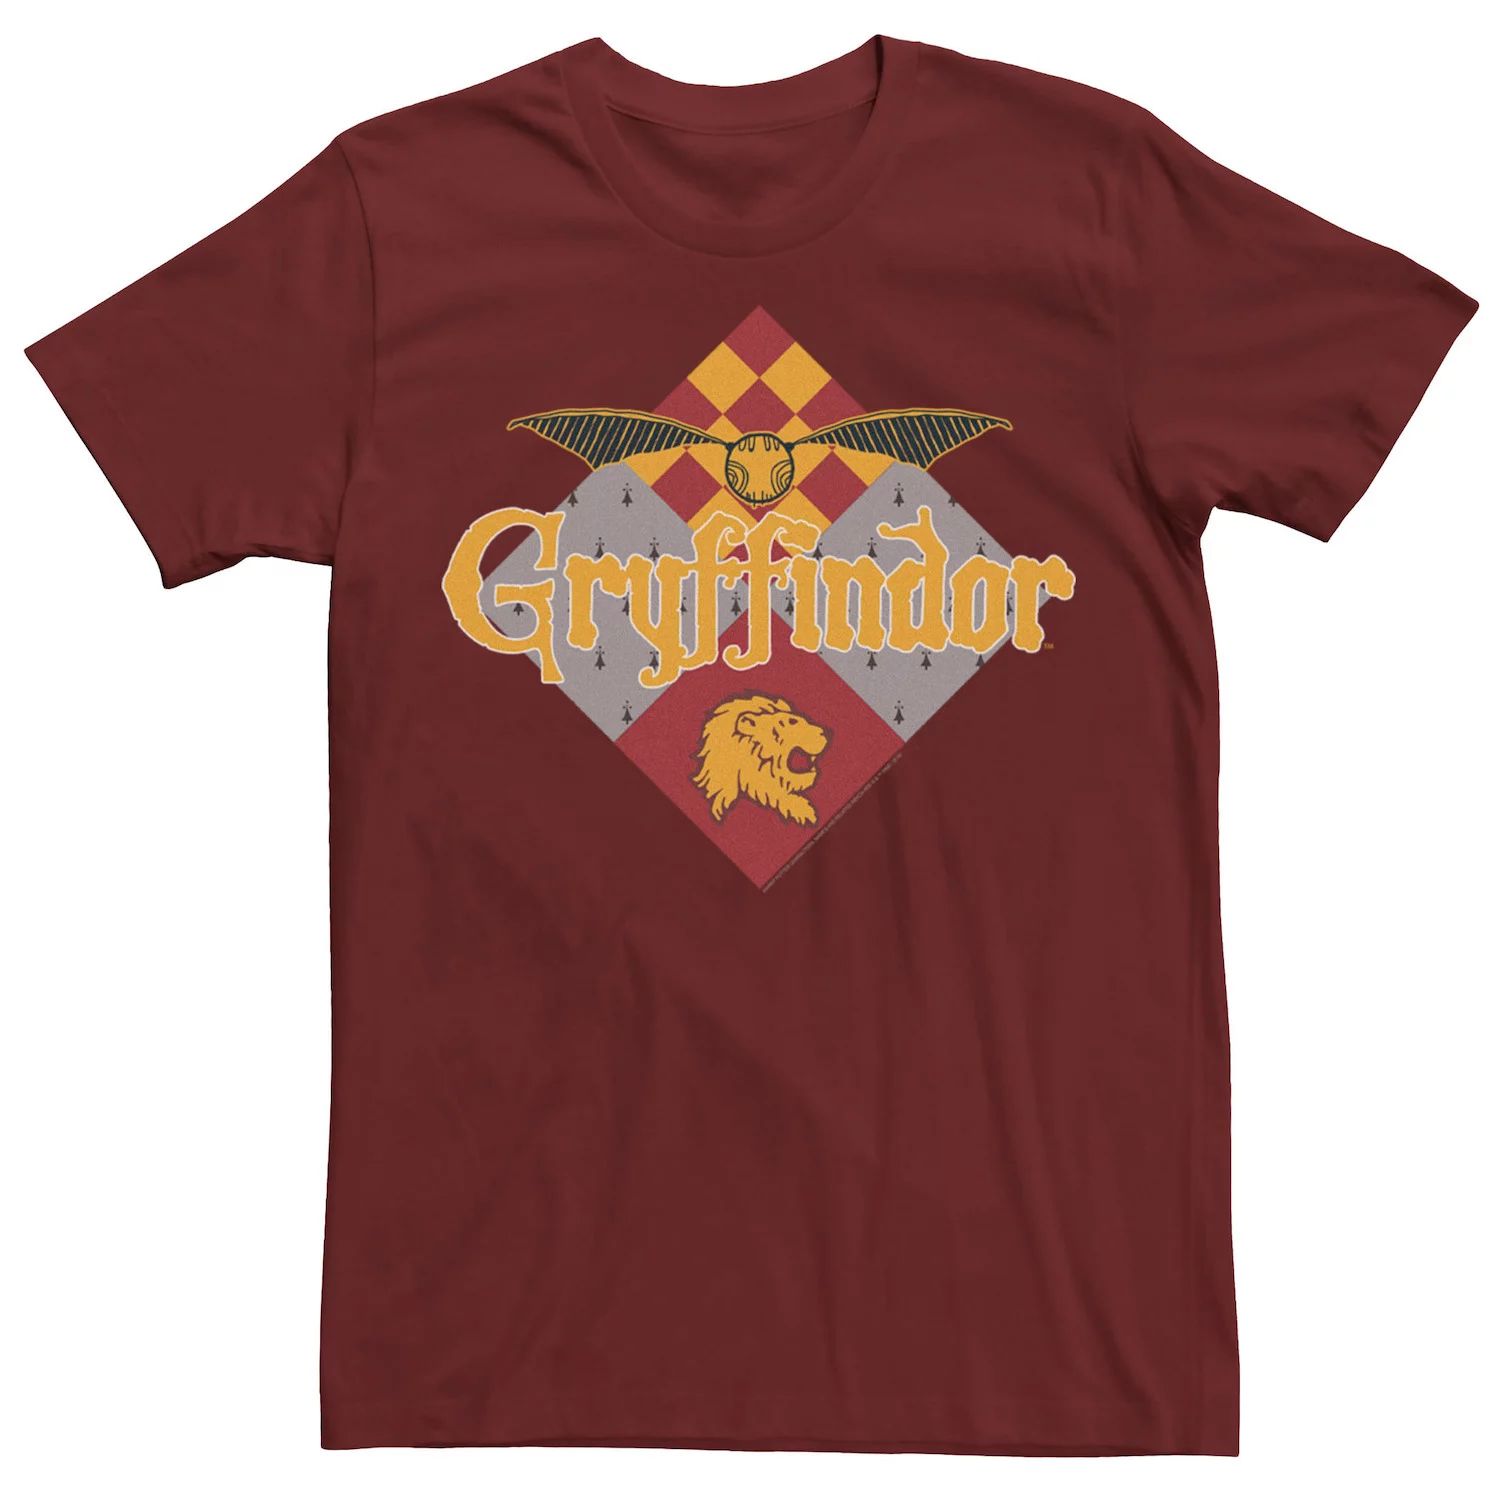 Мужская футболка с логотипом Gryffindor Golden Snitch Harry Potter значок harry potter golden snitch